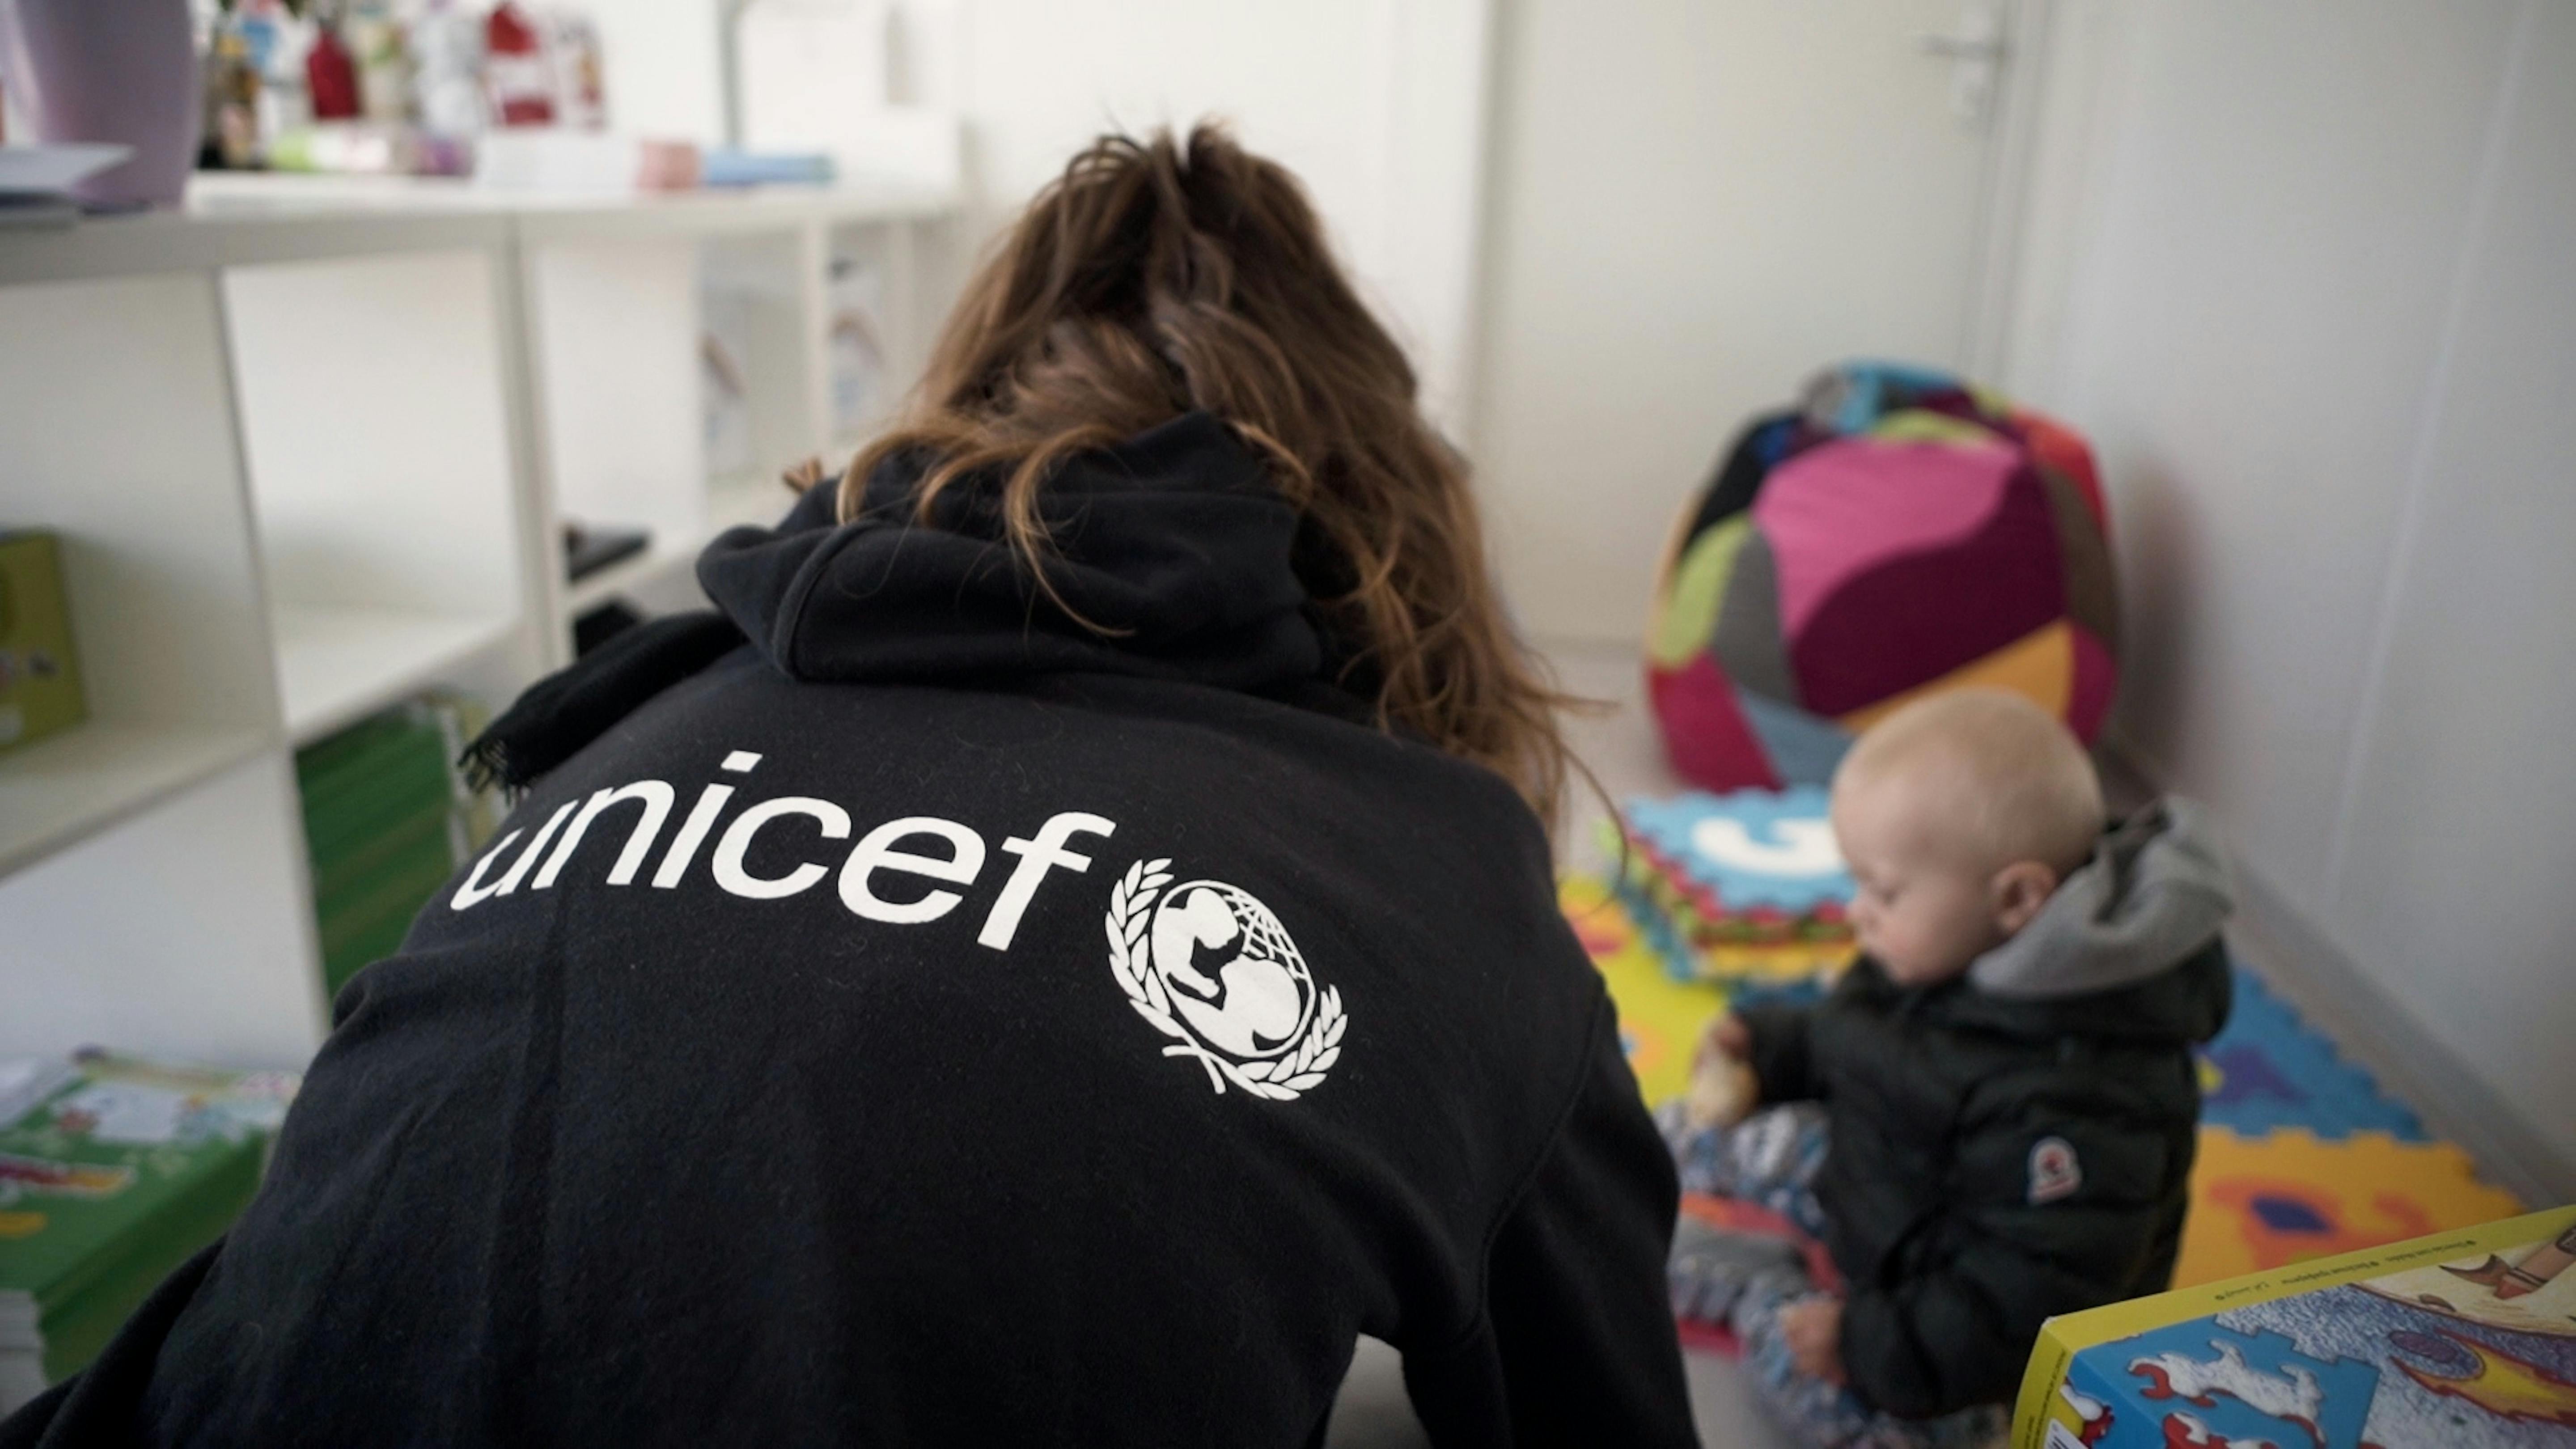 Un'operatrice UNICEF  gioca con un bambino in uno dei due "Blue Dot" aperti alla frontiera italiana con la Slovenia. Ne avevamo già installati 20 ai confini dell'Ucraina, per accogliere e prestare assistenza a centinaia di migliaia di bambini e donne in fuga dalla guerra.